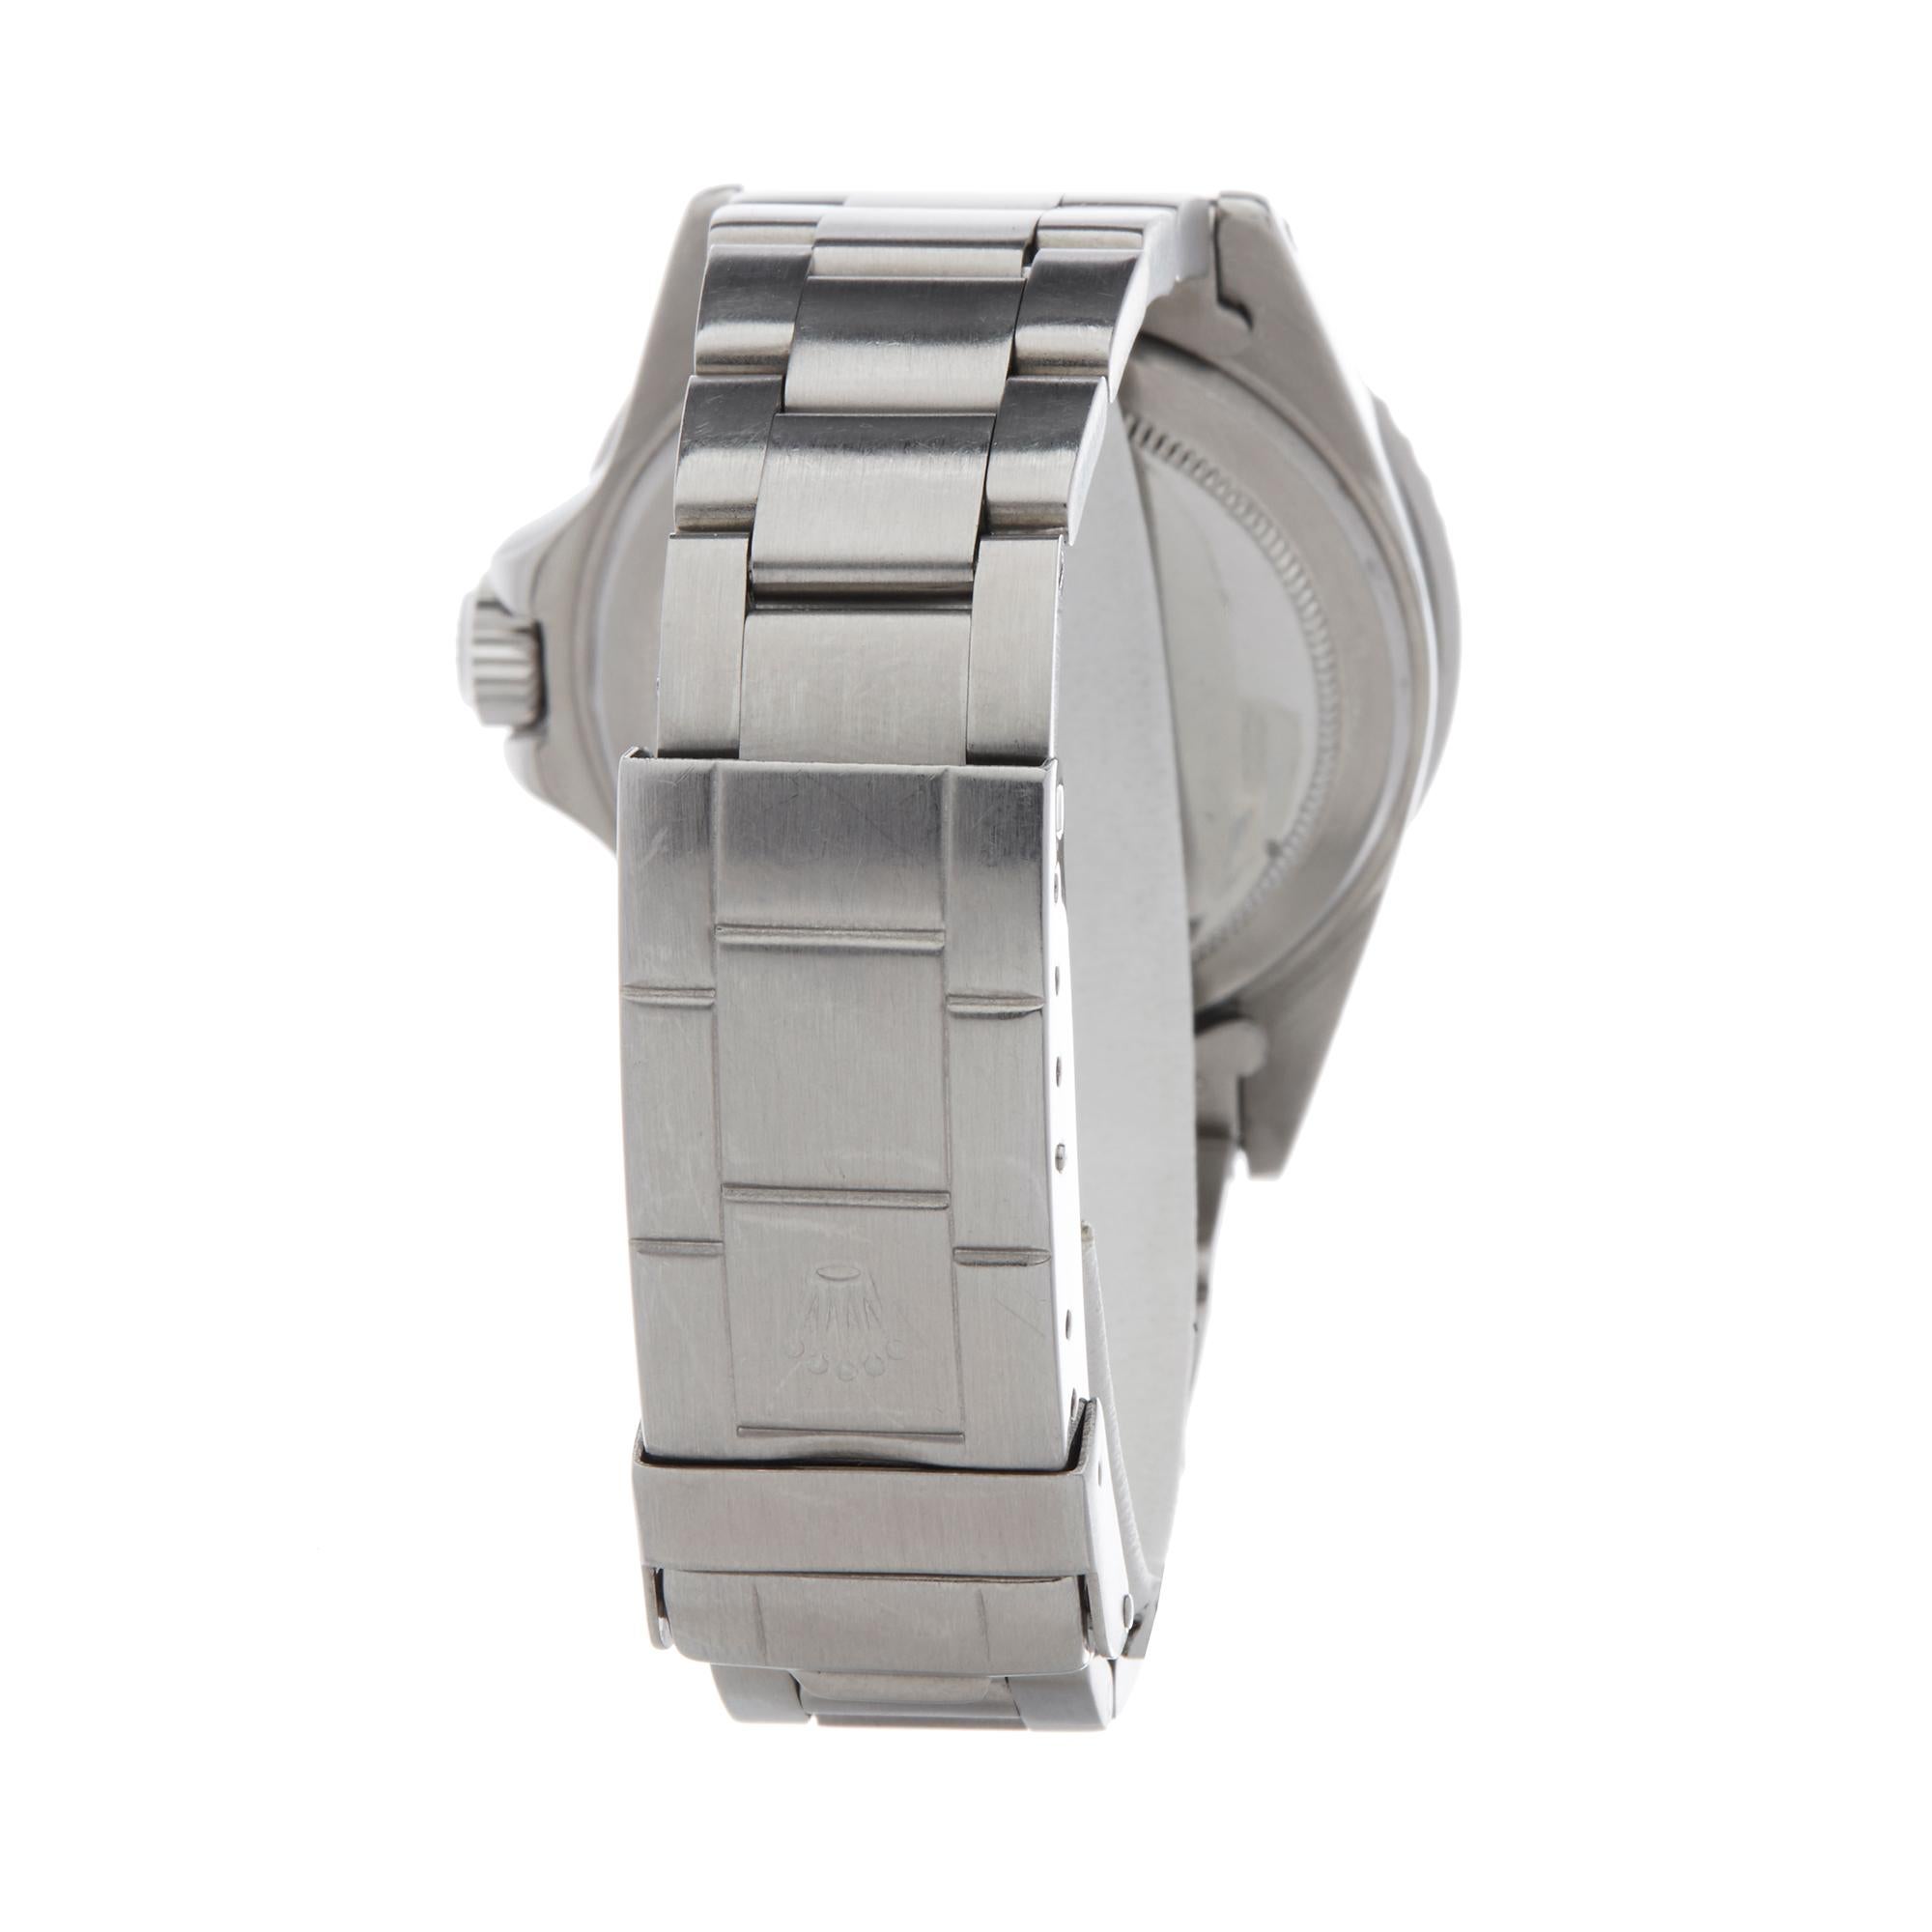 Rolex Submariner Non Date Stainless Steel Wristwatch 1